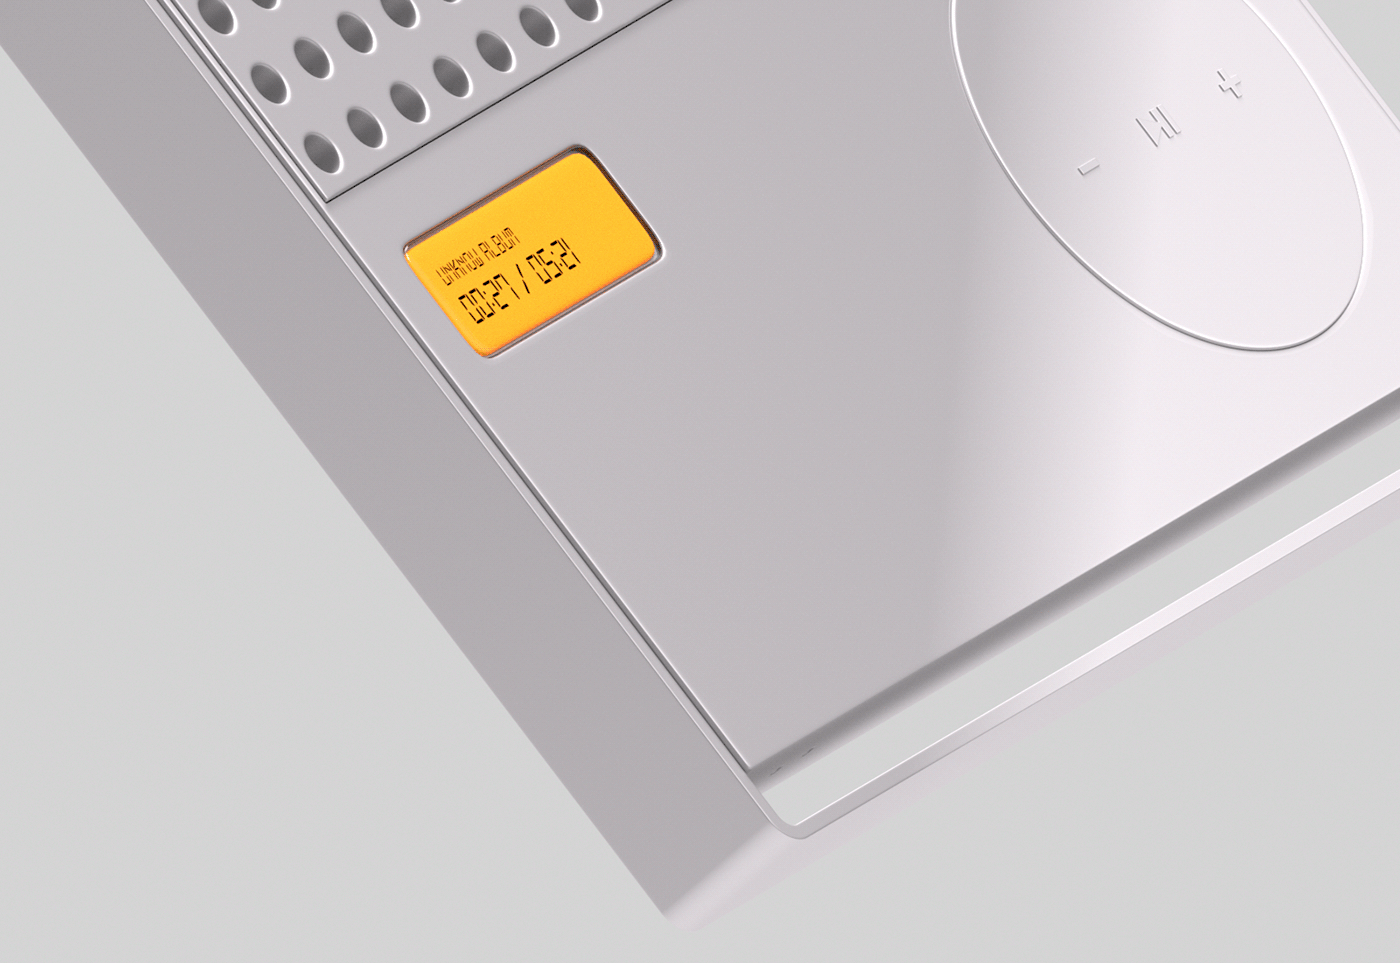 speaker 3dmodel branding  Logotype modeling product